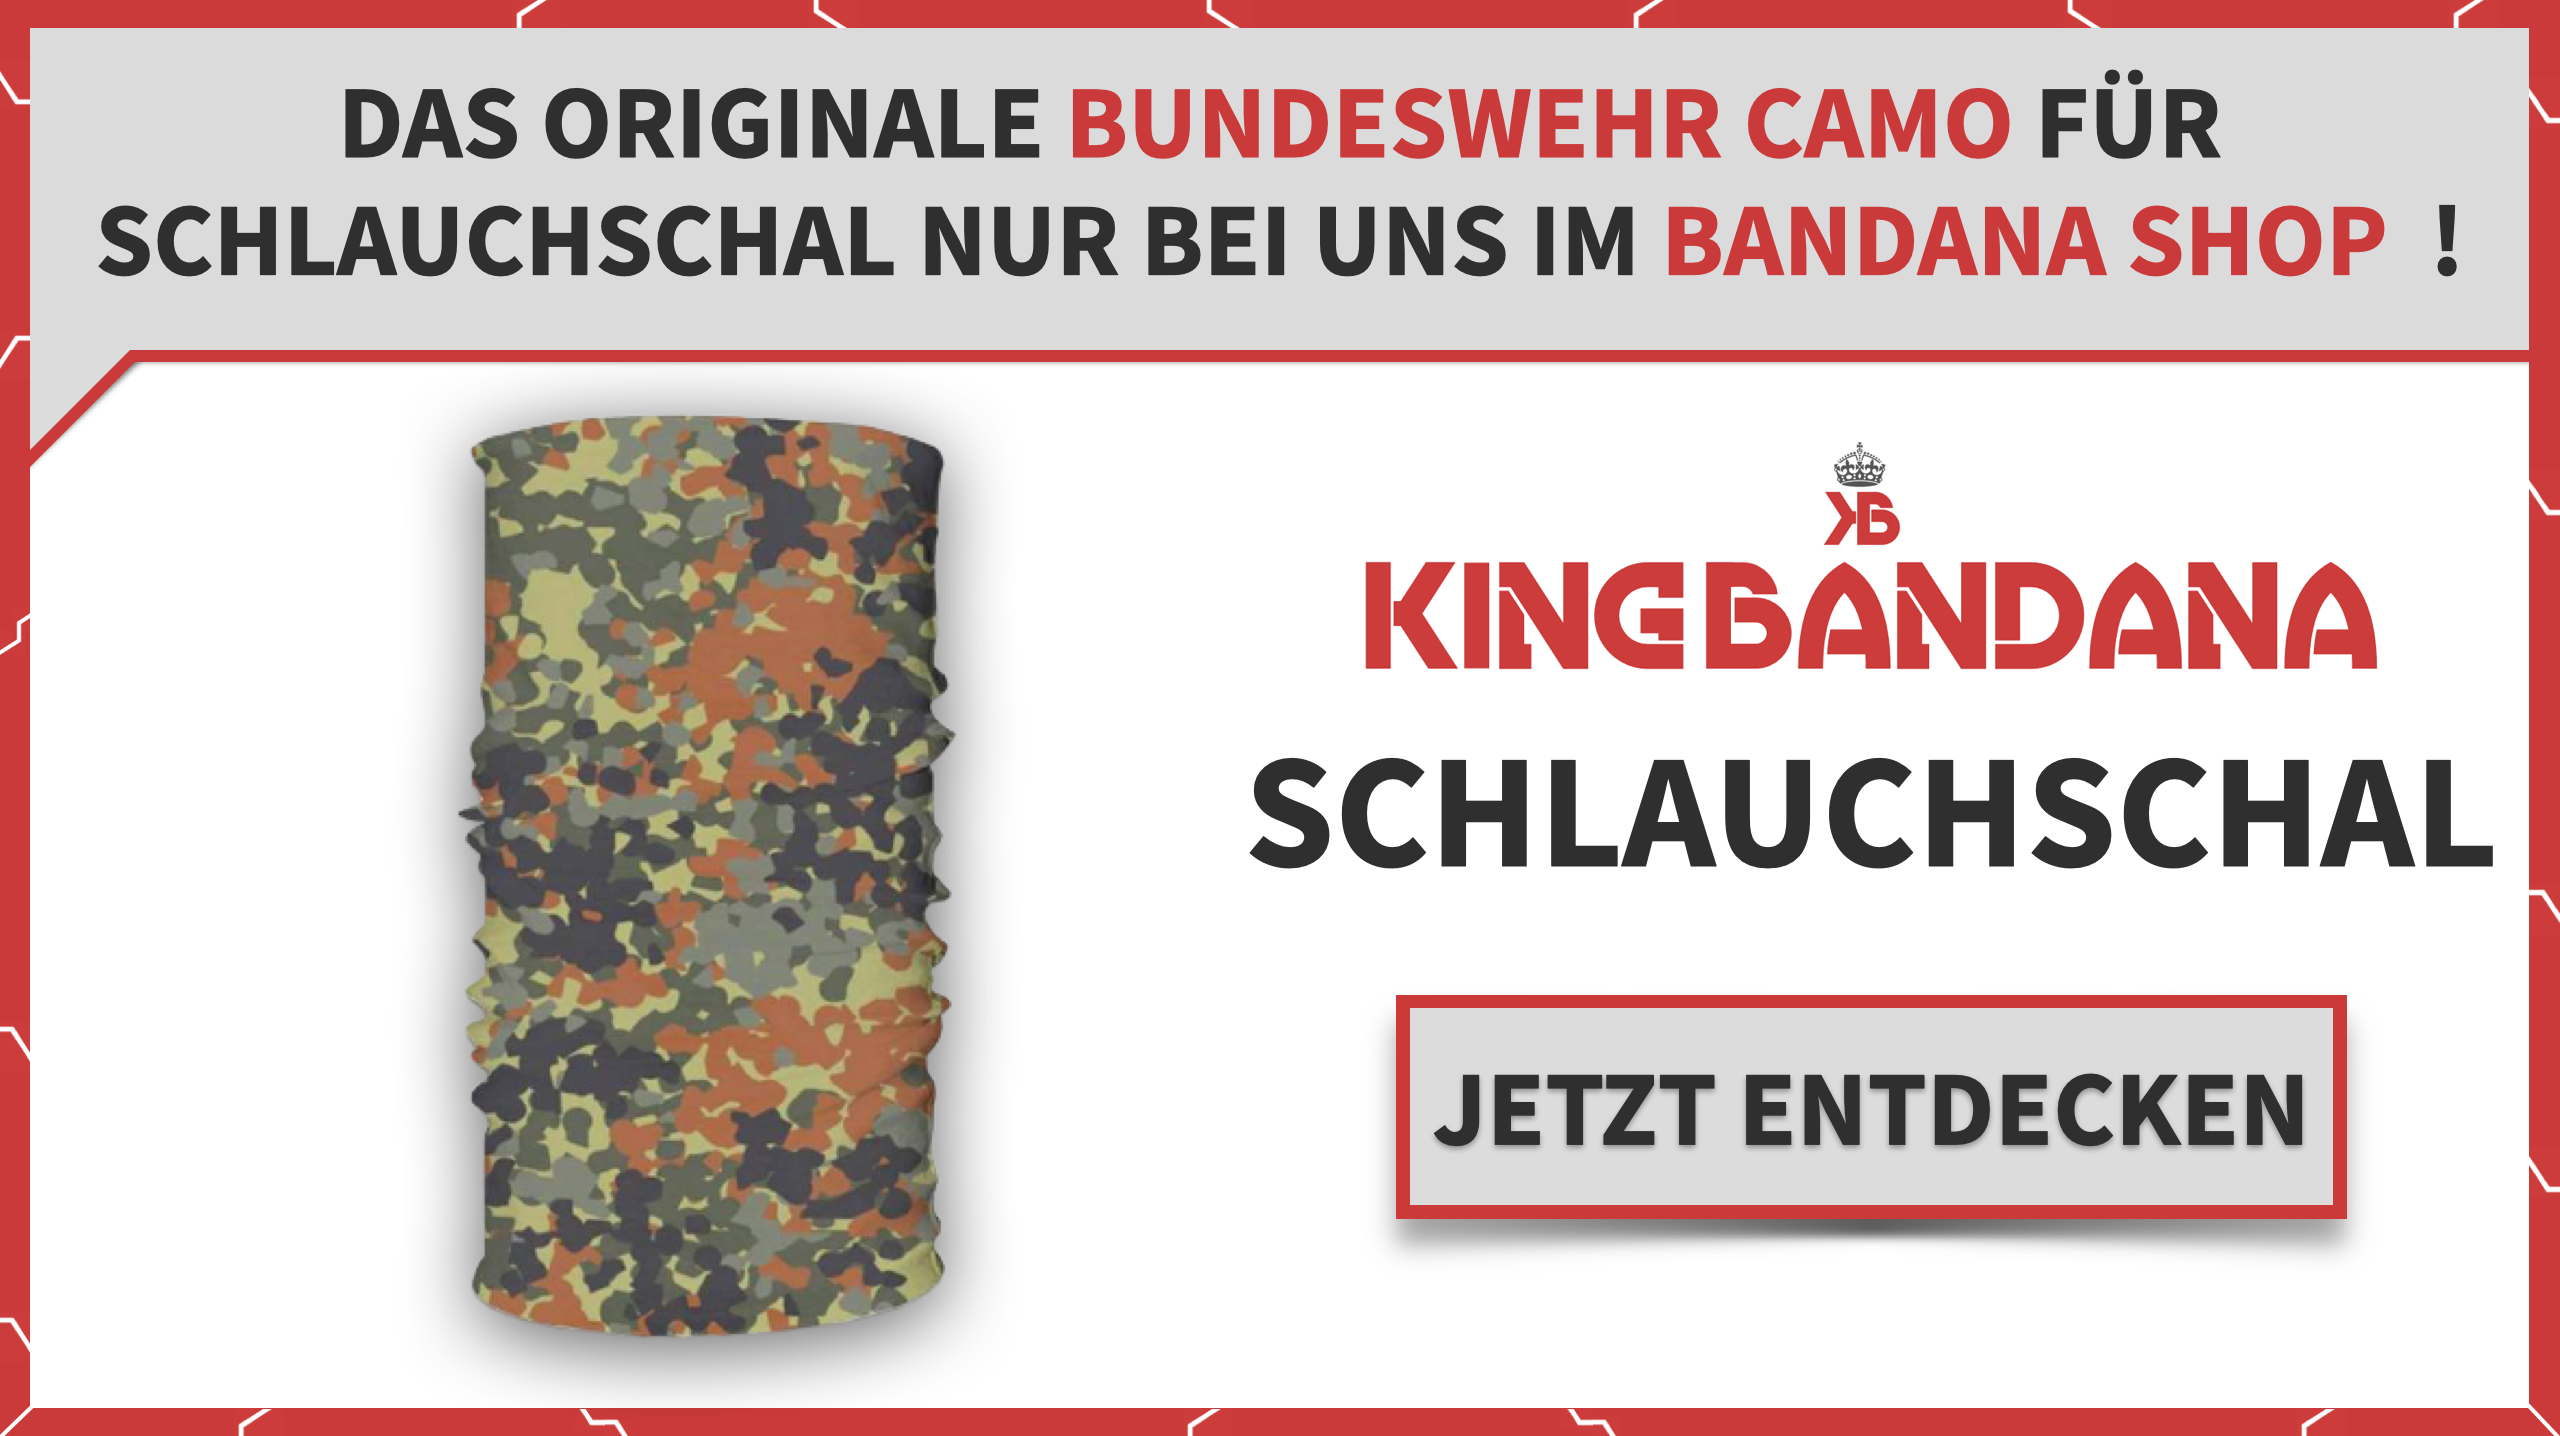 Schlauchschal Bundeswehr